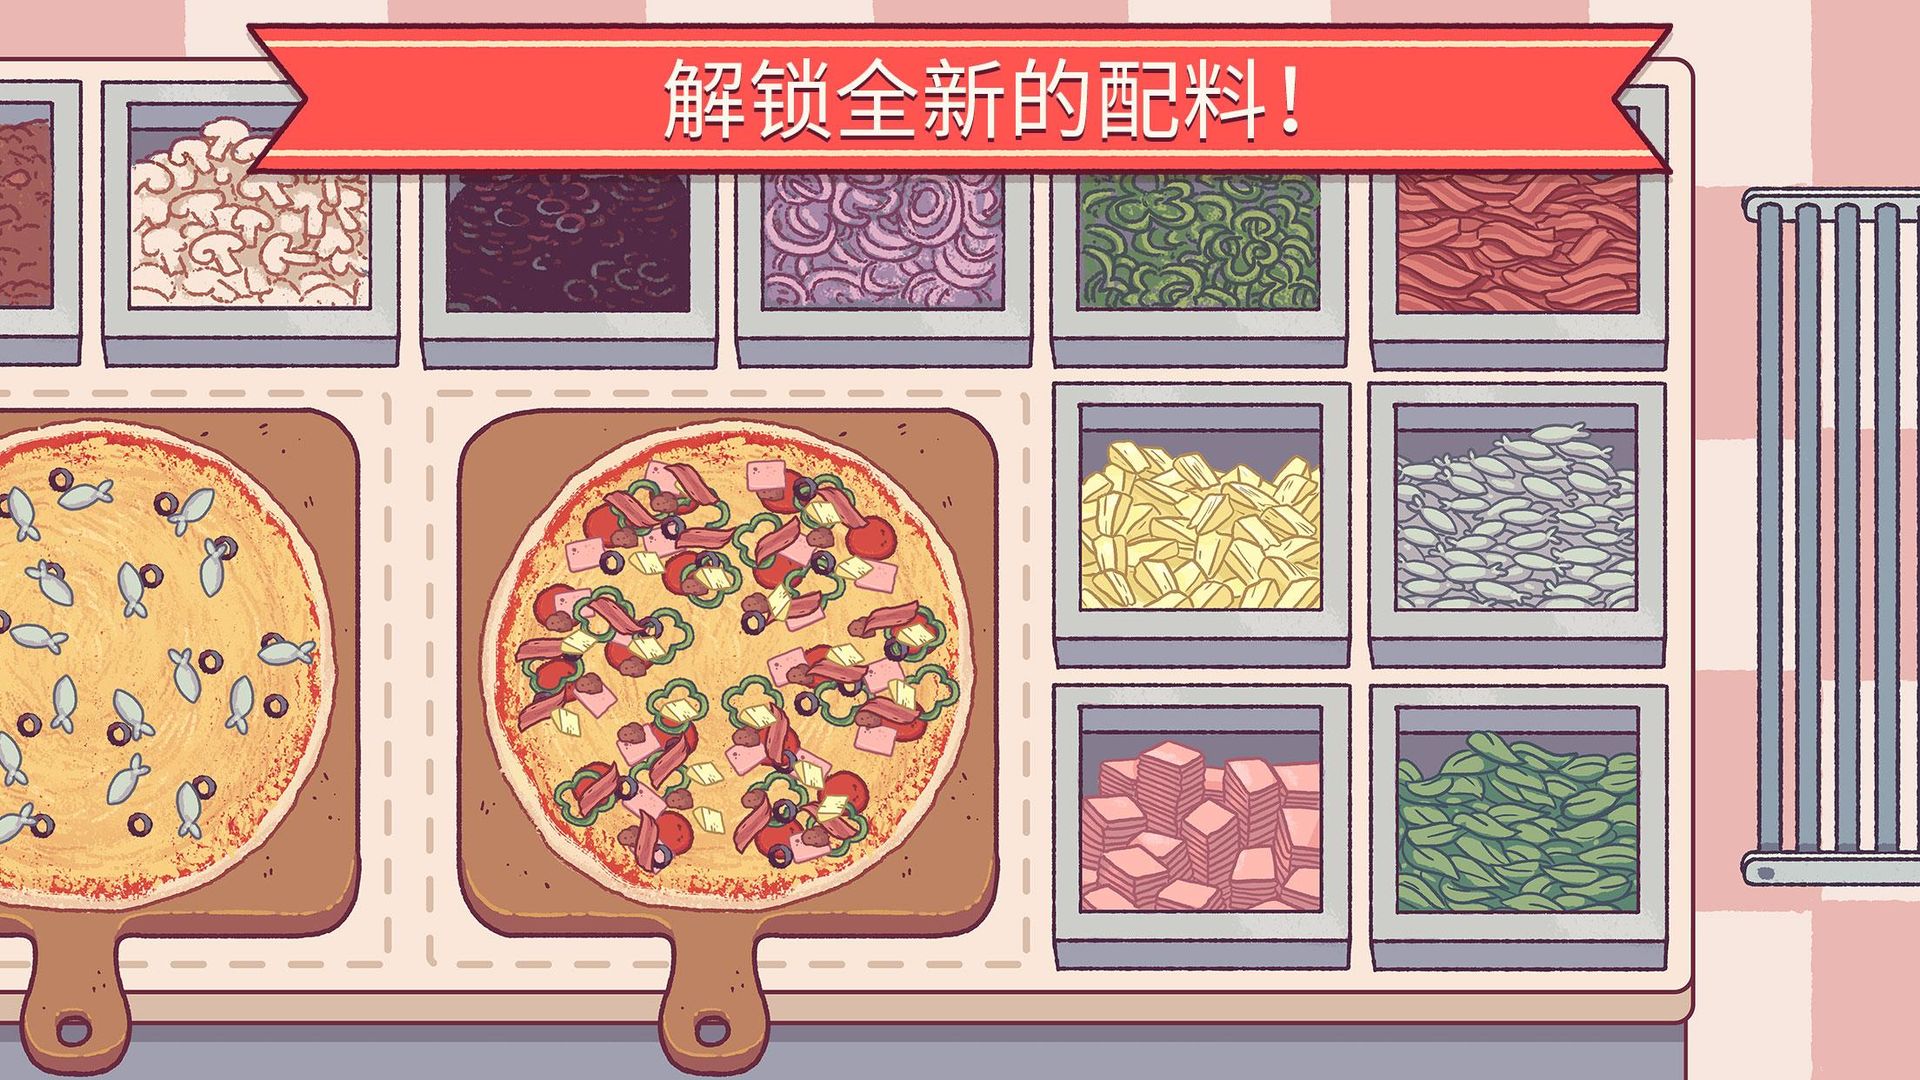 可口的披萨,美味的披萨下载完整版特色图片